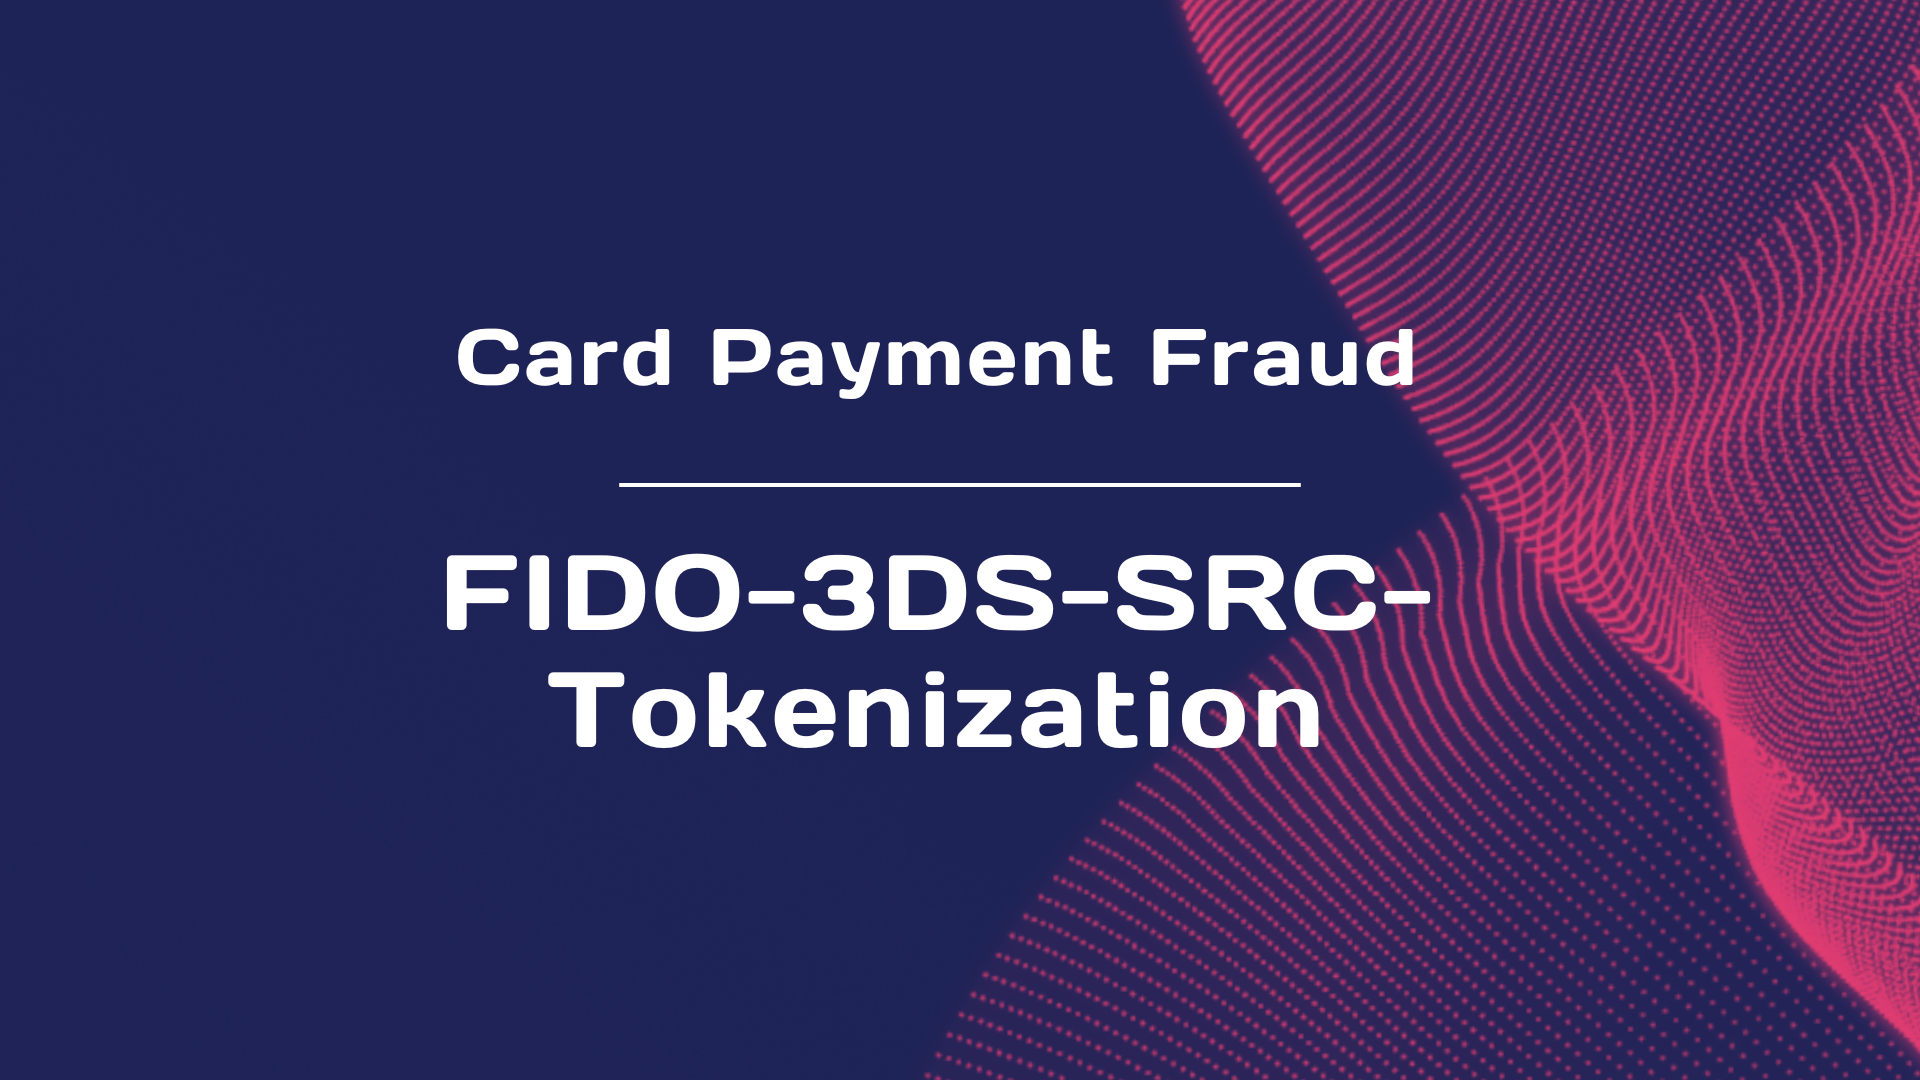 Card Payment Fraud - Module 4 : FIDO-3DS-SRC-Tokenization